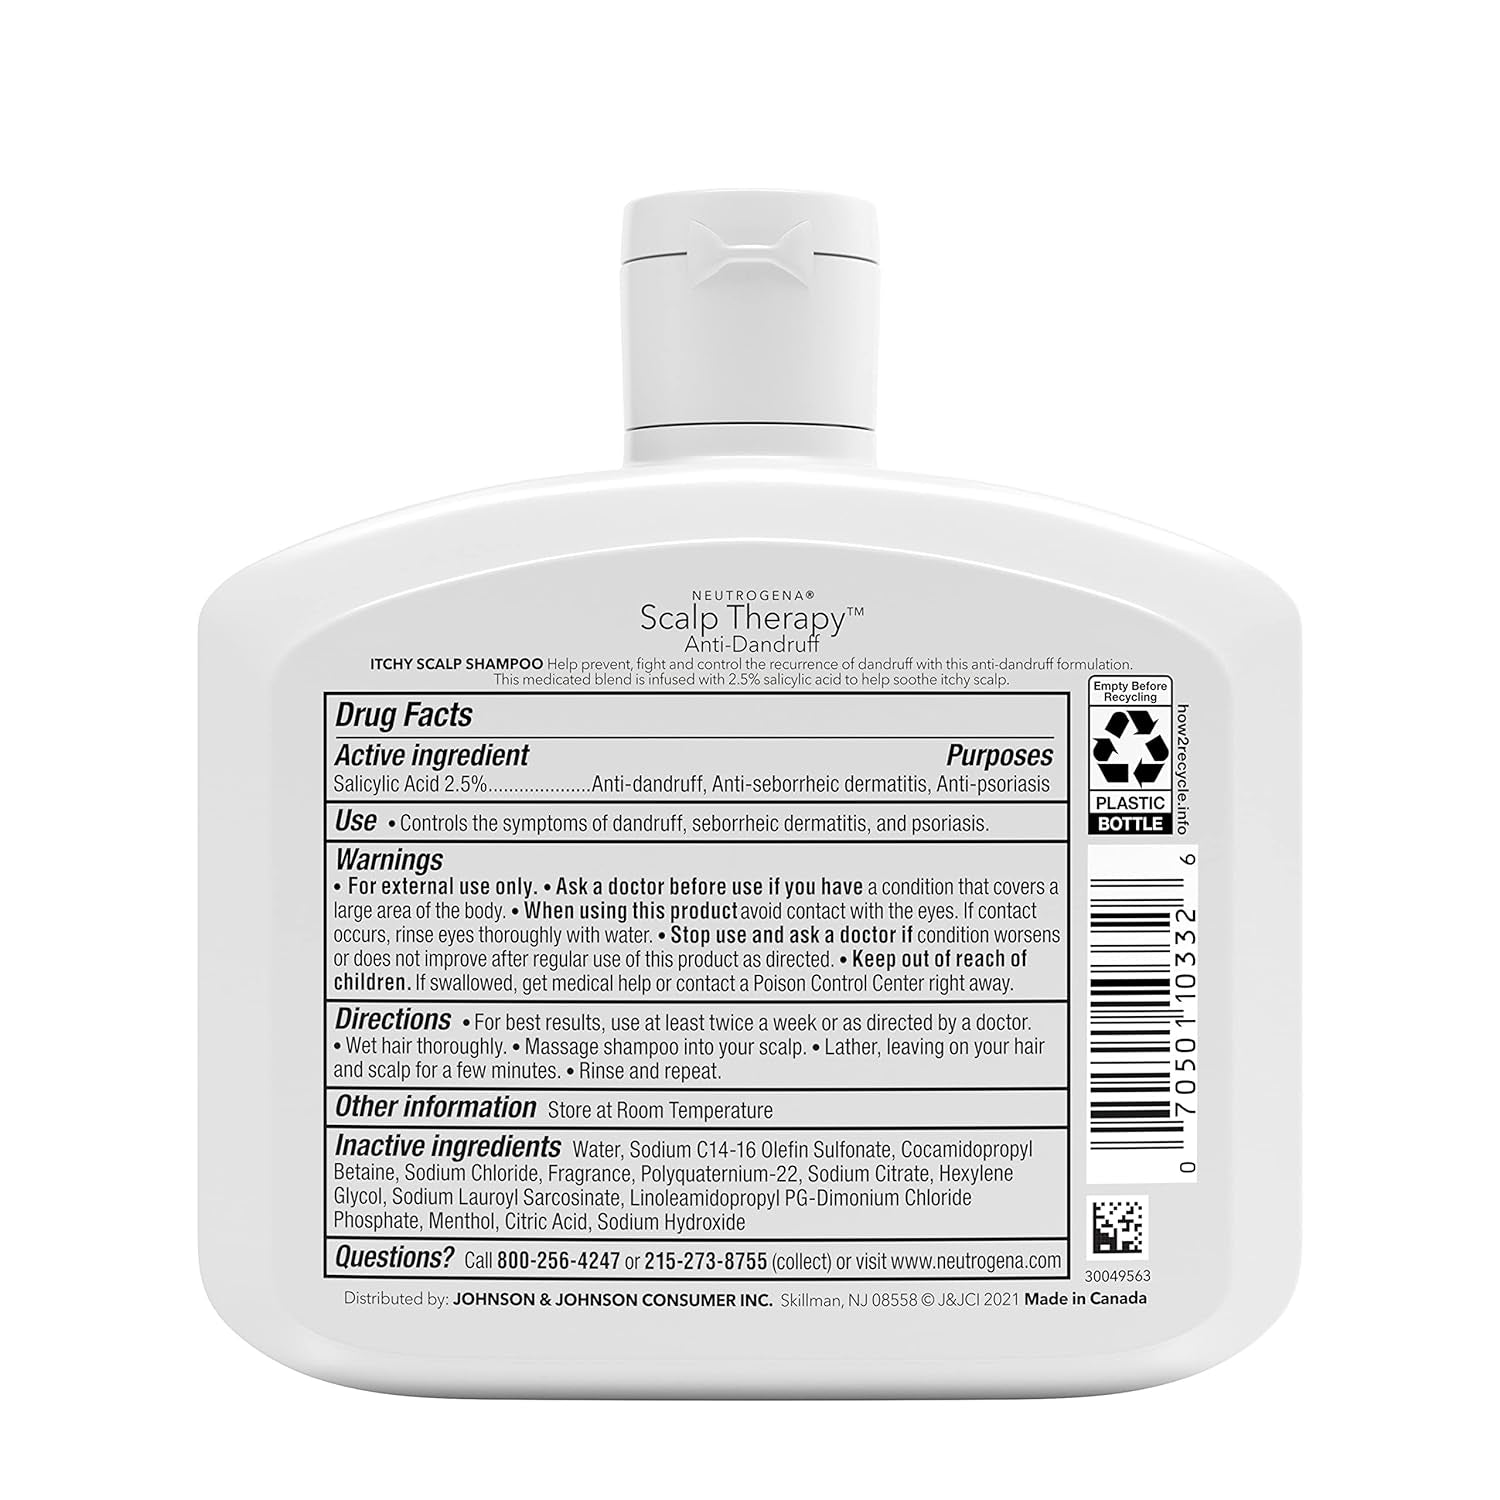 Neutrogena Scalp Therapy Anti-Dandruff Shampoo for Itchy Scalp, 2.5% Salicylic Acid with Peppermint Fragrance, 12 Fl Oz